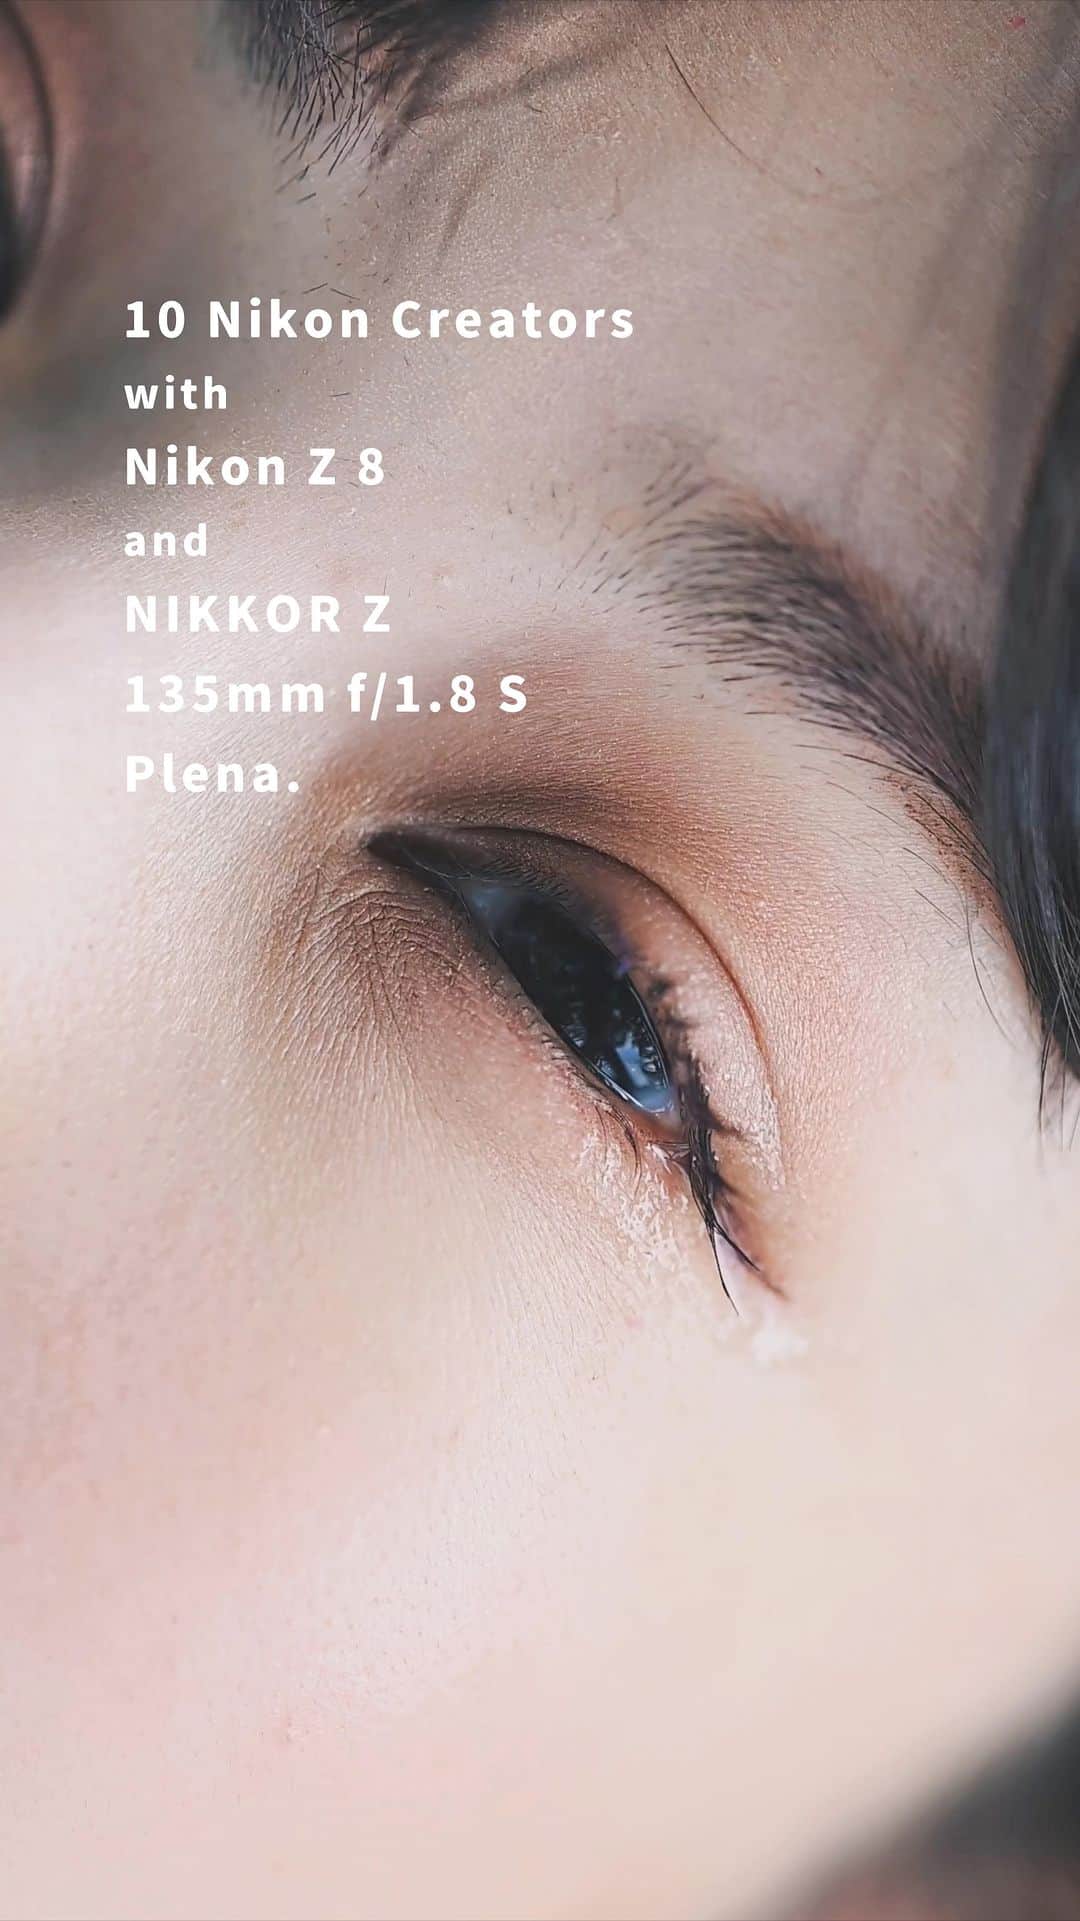 GENIC 公式インスタグラムのインスタグラム：「ポートレート撮影に適し、また美しい丸い玉ボケが撮れると話題のレンズ「NIKKOR Z 135mm f/1.8 S Plena」と、高画質な静止画・動画が撮れる新カメラ「Z 8」で新しく幻想的な世界を体験。  GENICでは、写真家の河野英喜さん @photo.konohideki を講師に迎え、「#GENIC_Nikon vol.23 GENIC meets_Nikon Z SPECIAL MEETUP」を開催しました。  この動画は、NIKKOR Z 135mm f/1.8 S PlenaとZ 8を体験した10名が作成した動画で構成したリールです。  ================= ＜リール作成参加者＞ AOI @tammychannn AYANCE @ayance__ AKANE @____akanechan____ Rinco Koyama @rinco_koyama yuco @yuco_ushi/ 染谷ノエル @noelle.s12 YURIA	 @yuria_color AYUMI @ooooooayumioooooo ぴさき @piesaki_ 伊佐知美 @tomomi_isa =================  GENIC WEBでは、Zシリーズ・Zマウントレンズのポテンシャルを感じ、新たな表現にチャレンジした10名の作品とともに、NIKKOR Z 135mm f/1.8 S PlenaとZ 8に対するリアルボイスをたっぷり紹介しています。 @genic_magのハイライト「GENIC WEB」よりアクセスできます。どうぞお楽しみください。  #Z8 #nikon #NIKKORZ #nikoncreators #genic_mag #genic_nikon #ポートレート#NikonPlena」